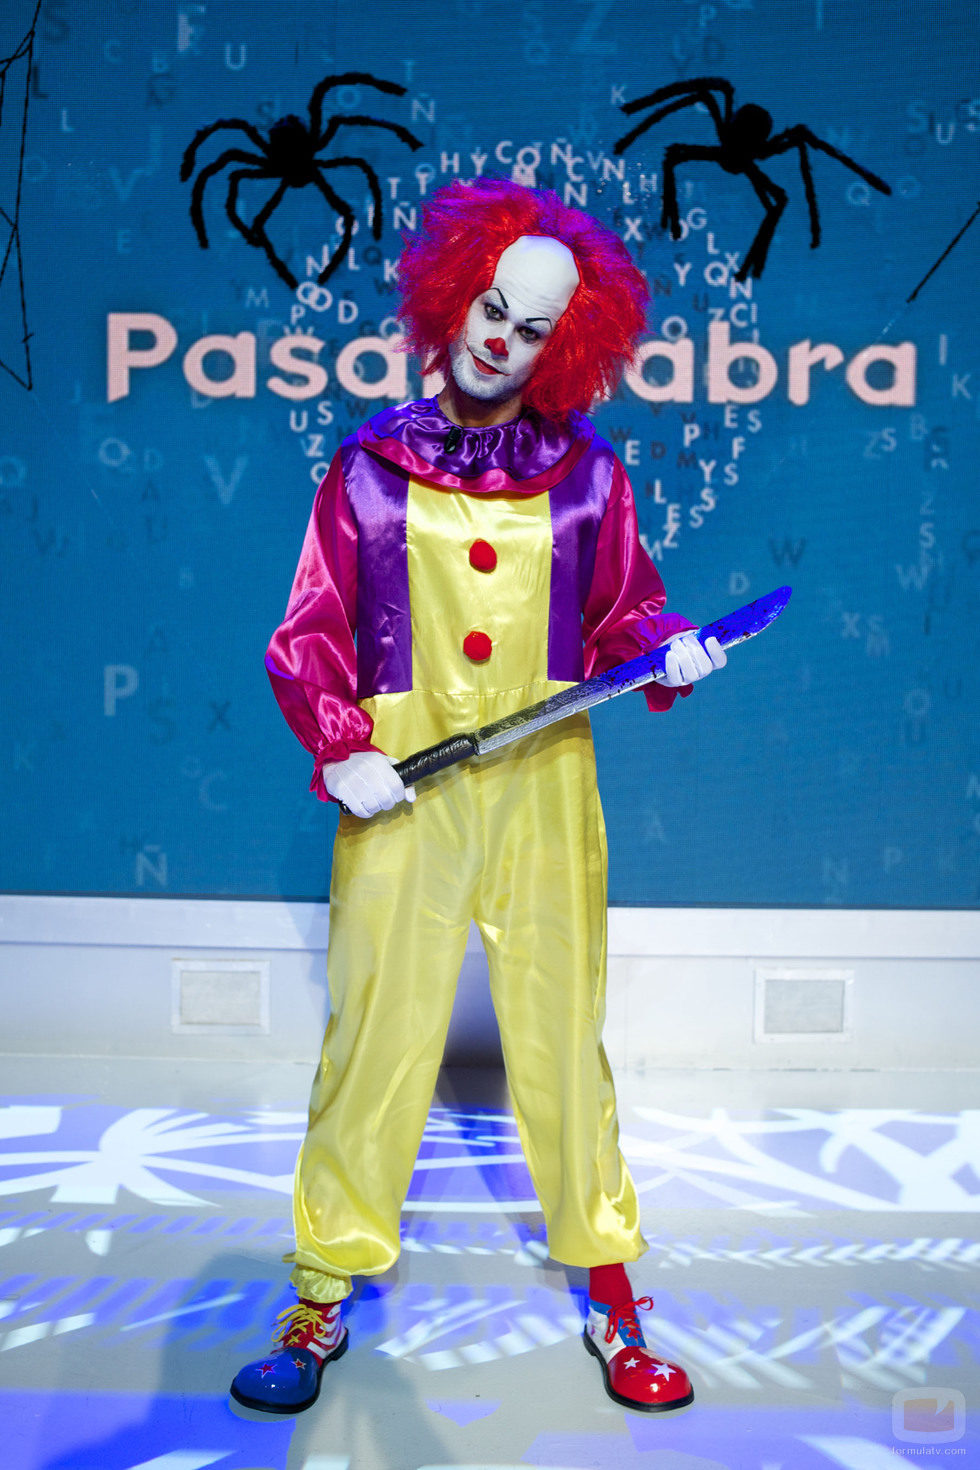 El actor José Lamuño se disfraza de payaso asesino en el especial de Halloween de 'Pasapalabra'